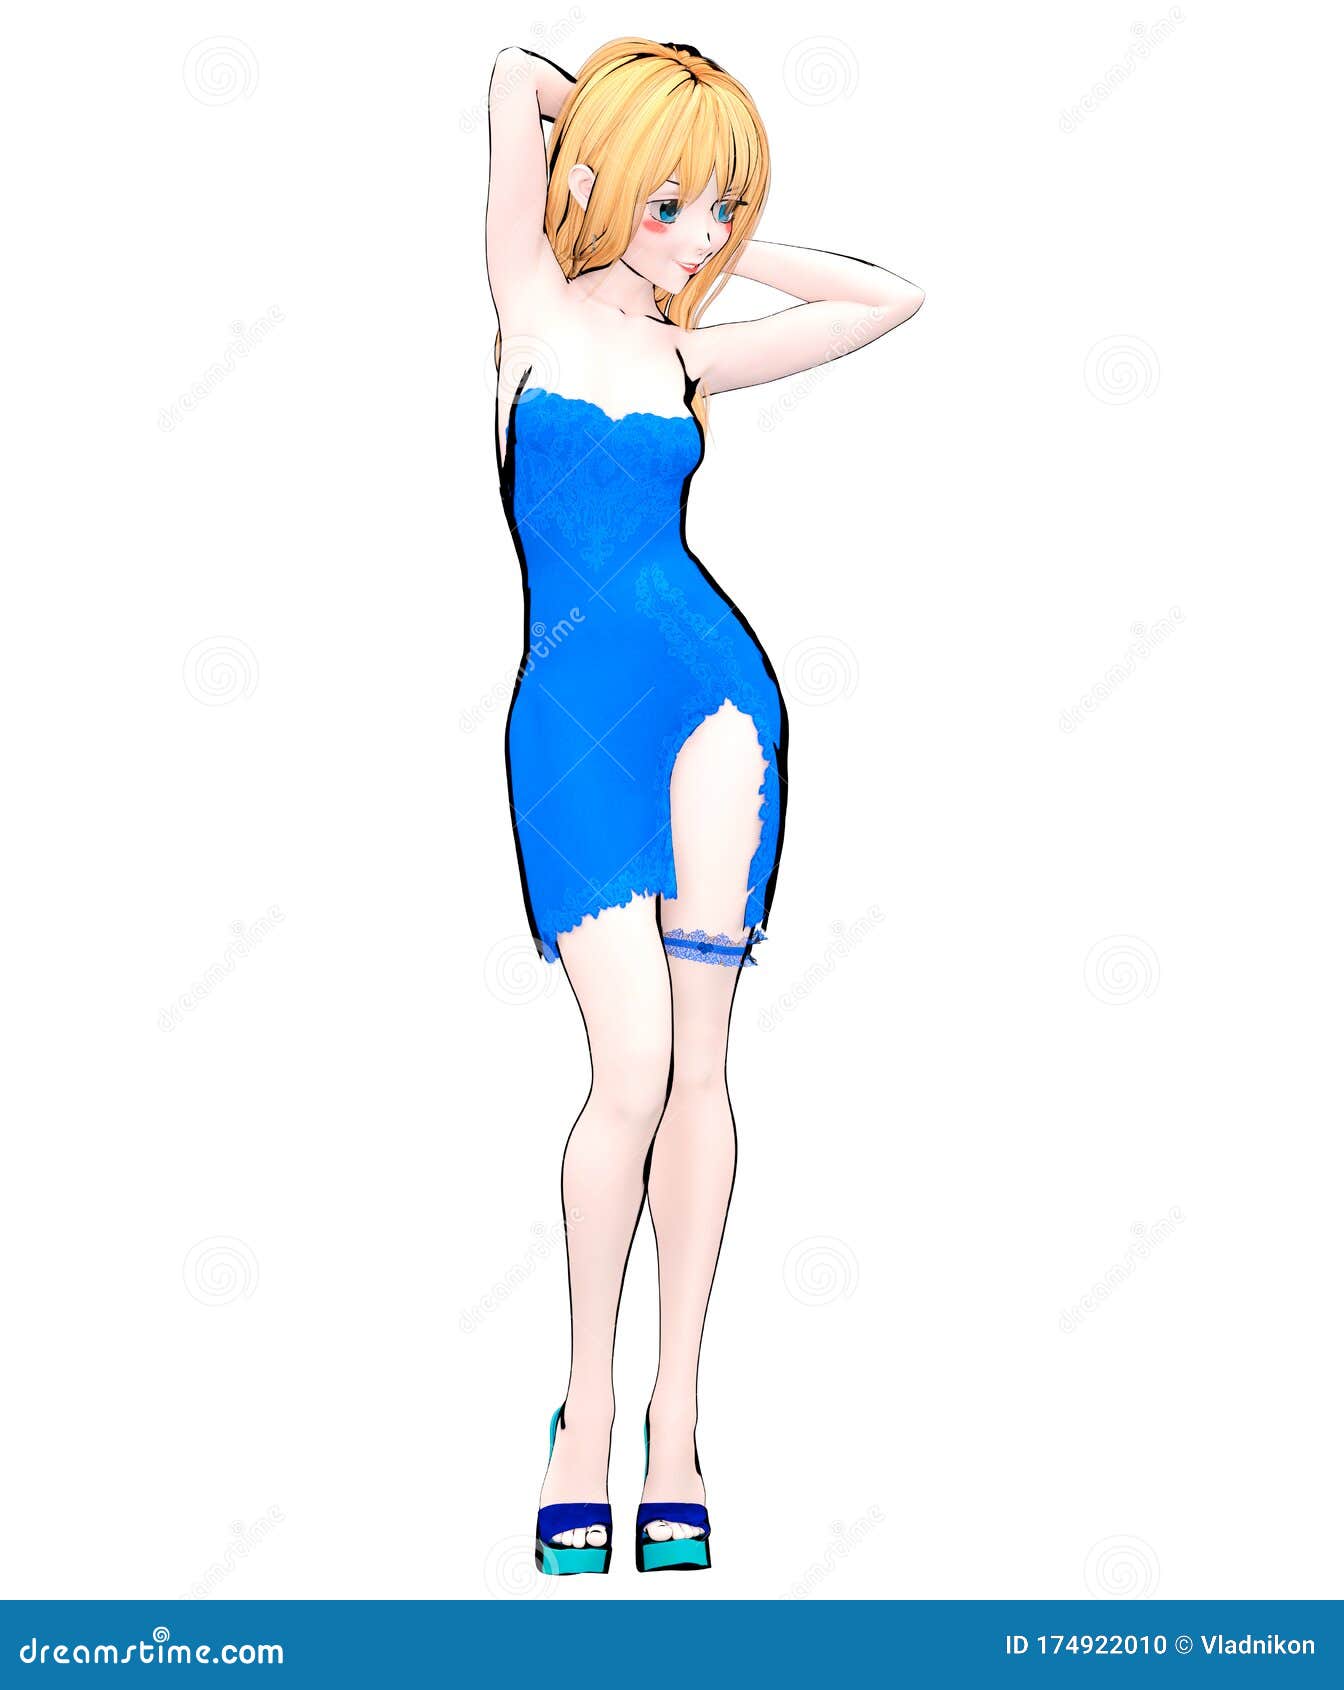 3D japanese anime girl stock illustration. Illustration of japanese -  174922010